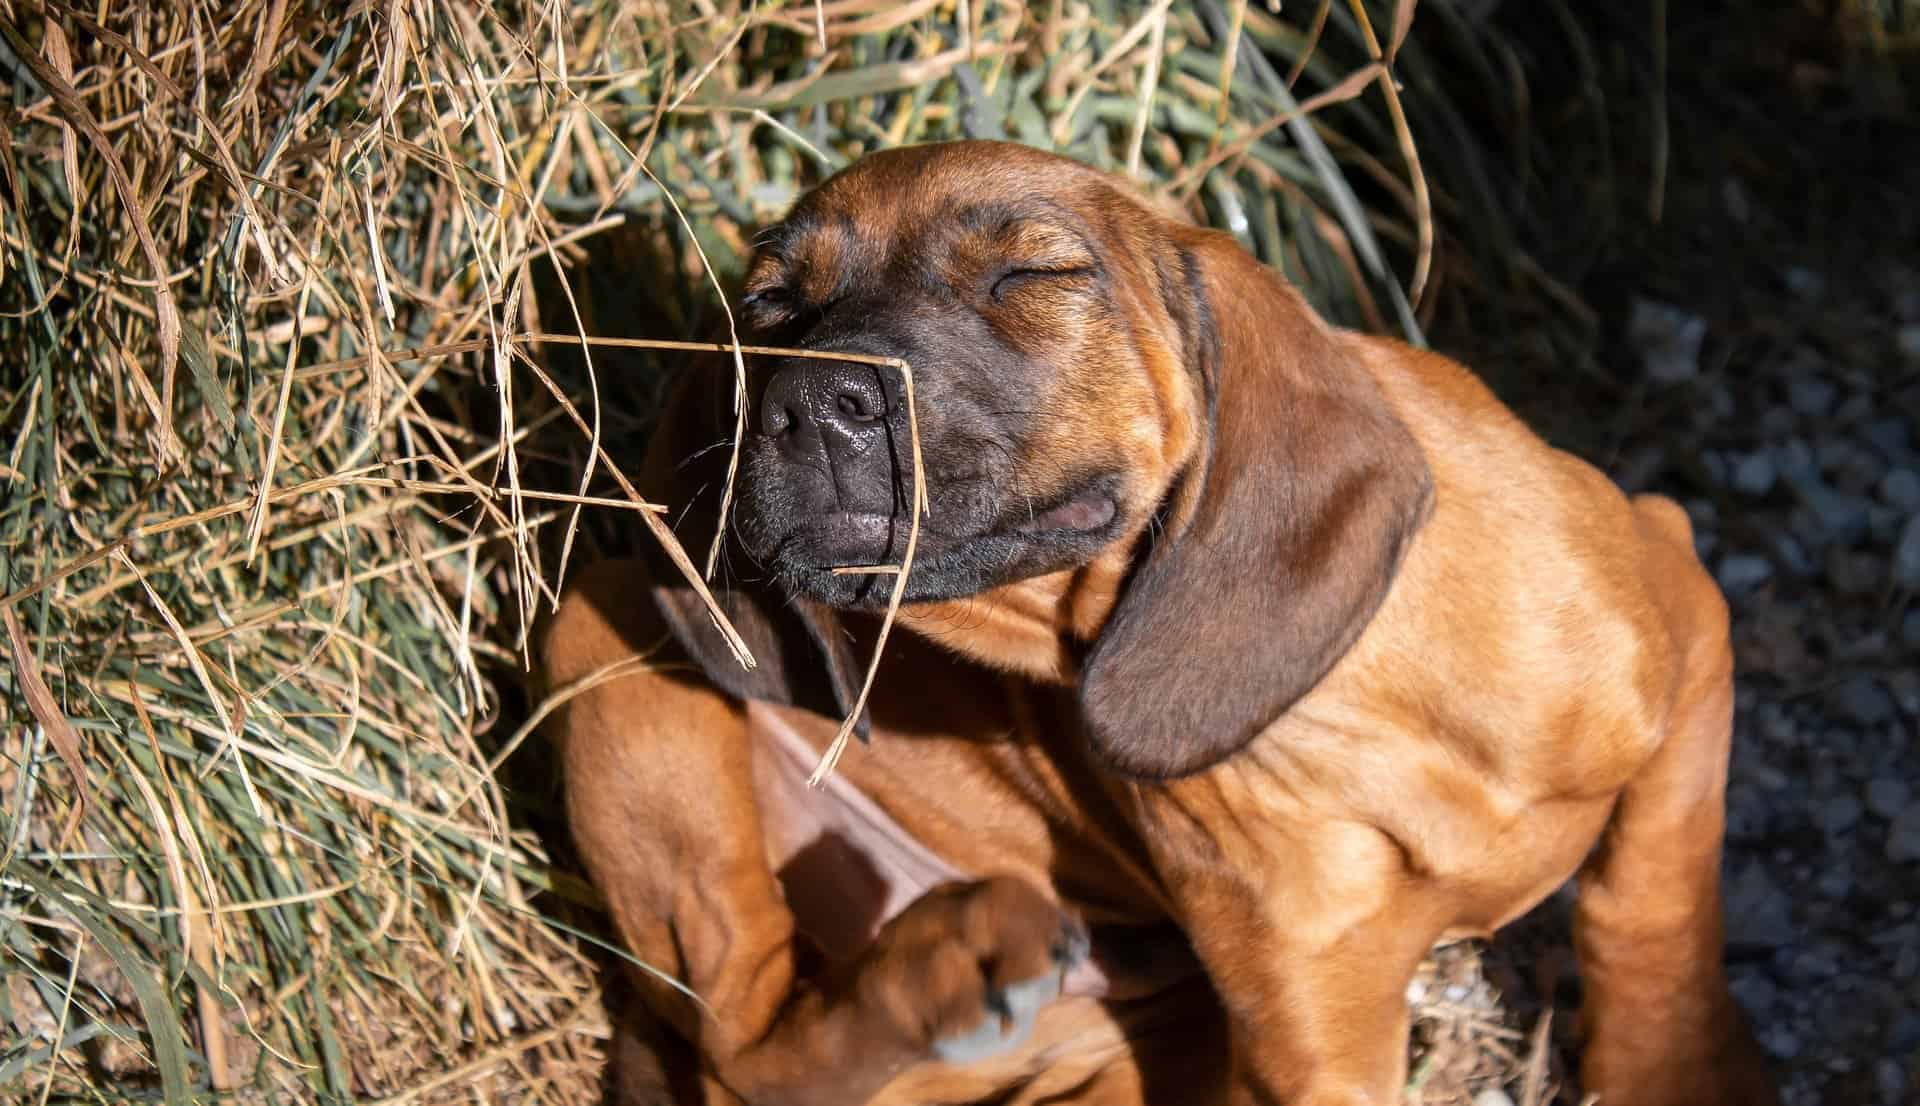 Insektenschutz ist für Hunde wichtig. Hier juckt sich ein junger Hund./Pixabay